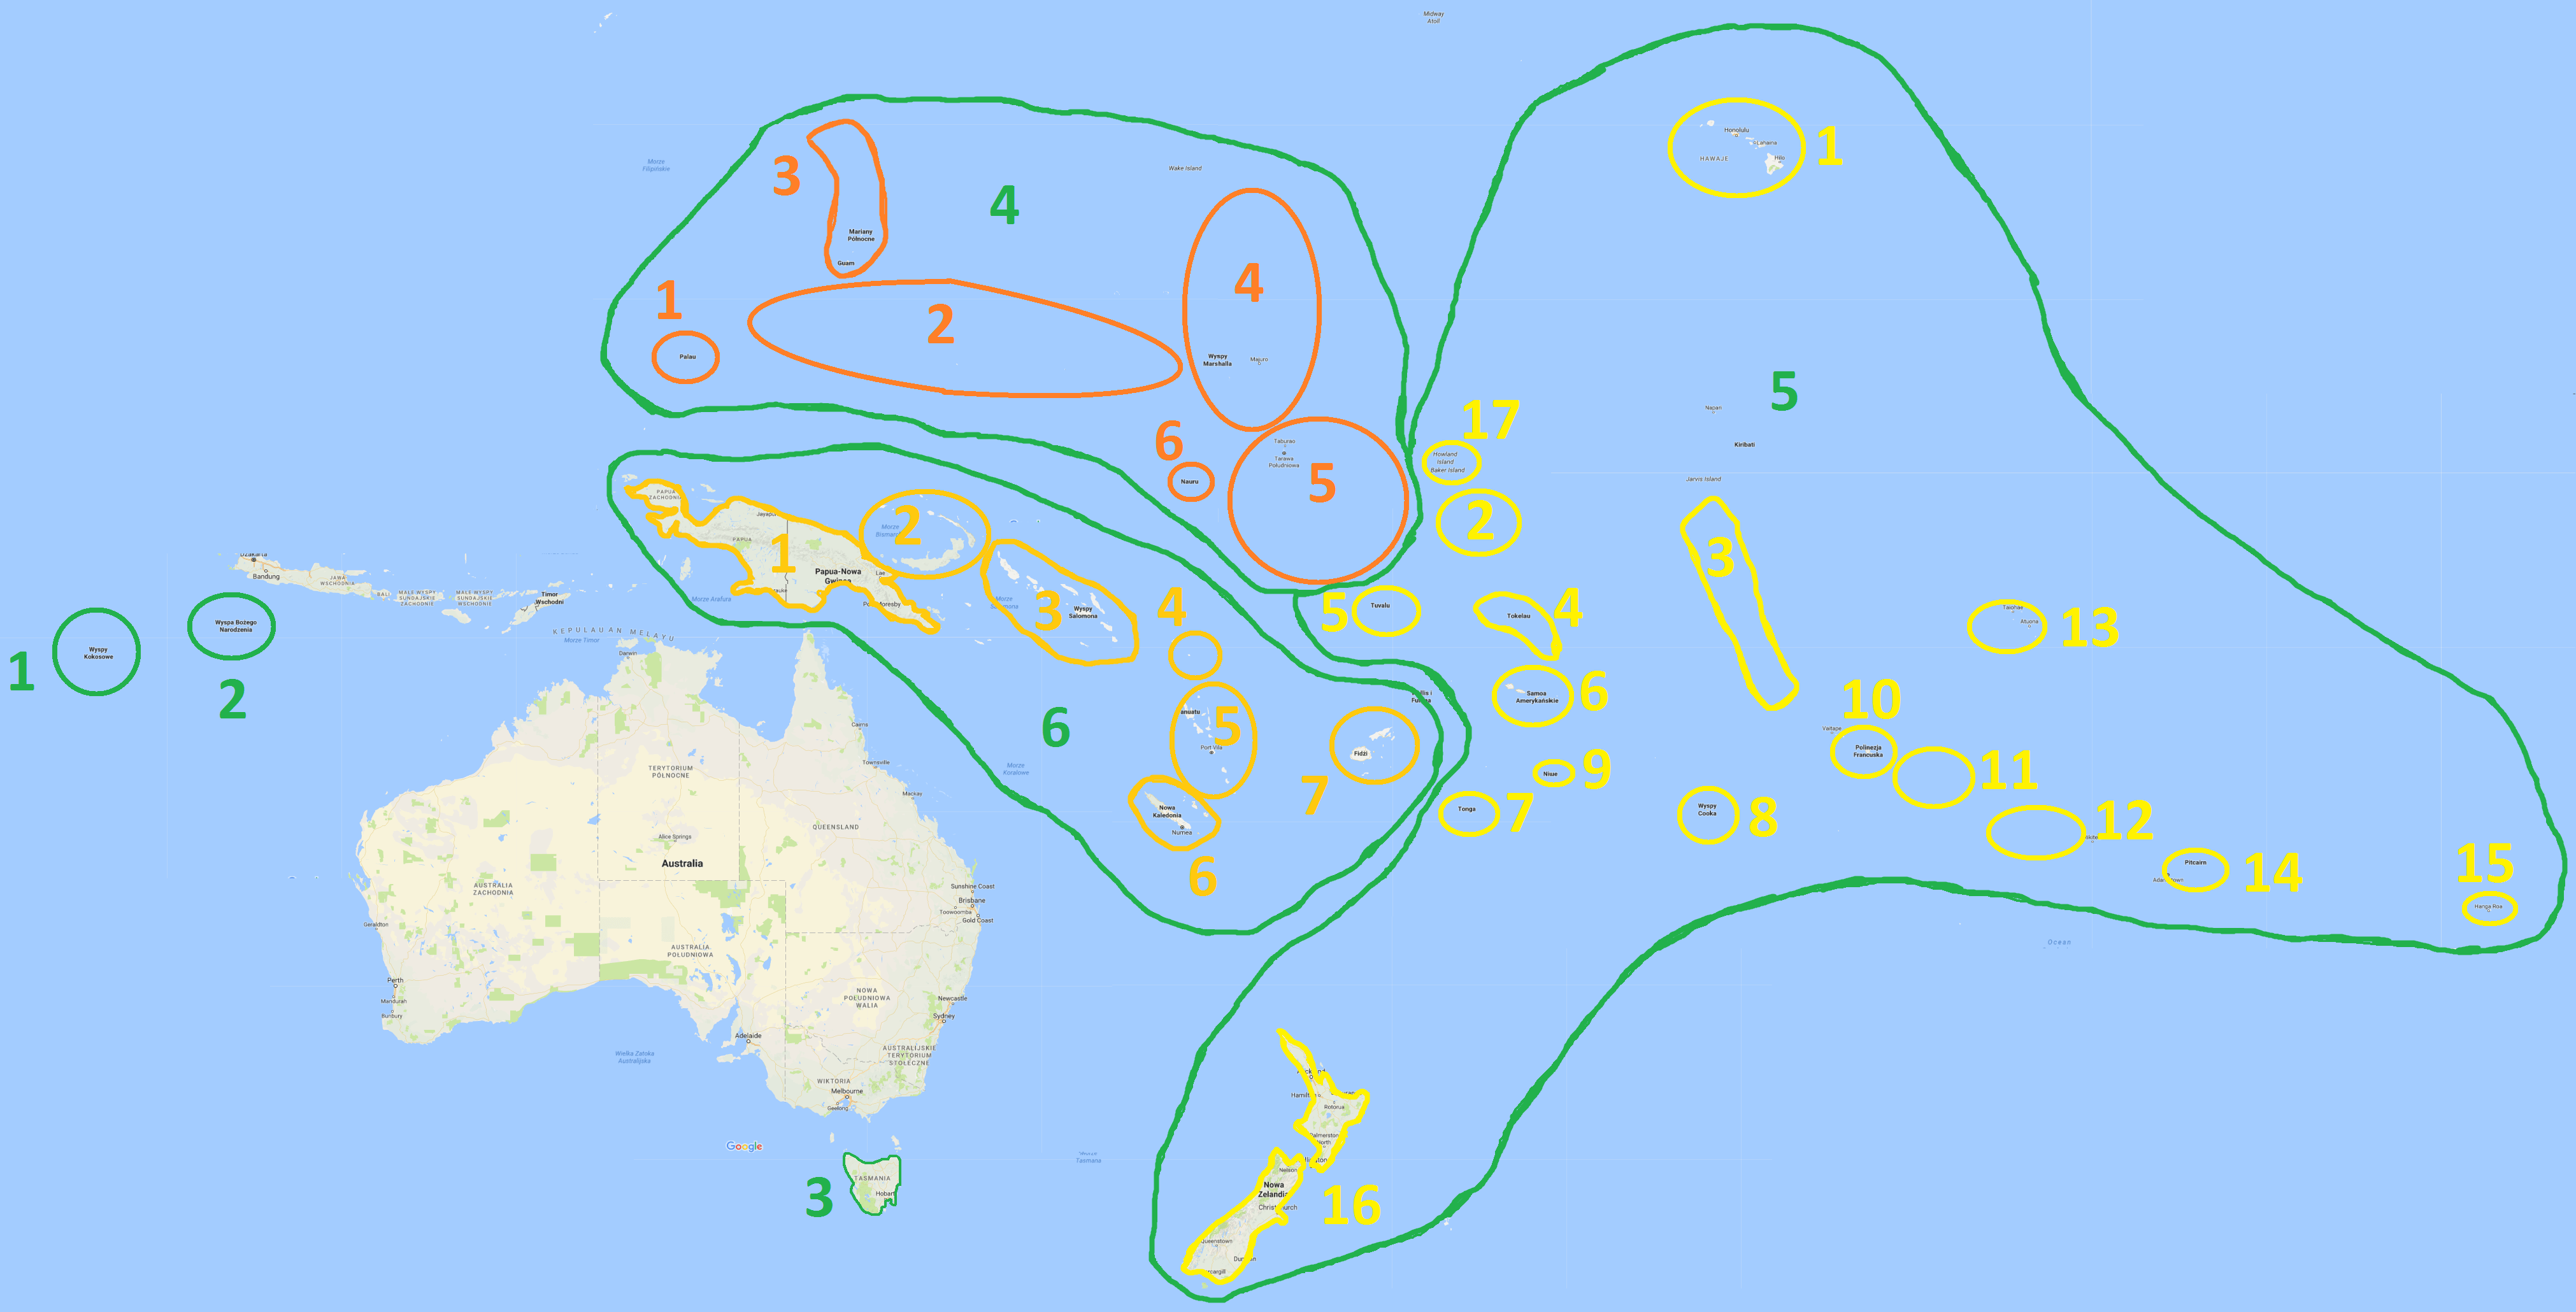 Wyspy Australii i Oceanii, mapa konturowa islands of Australia and